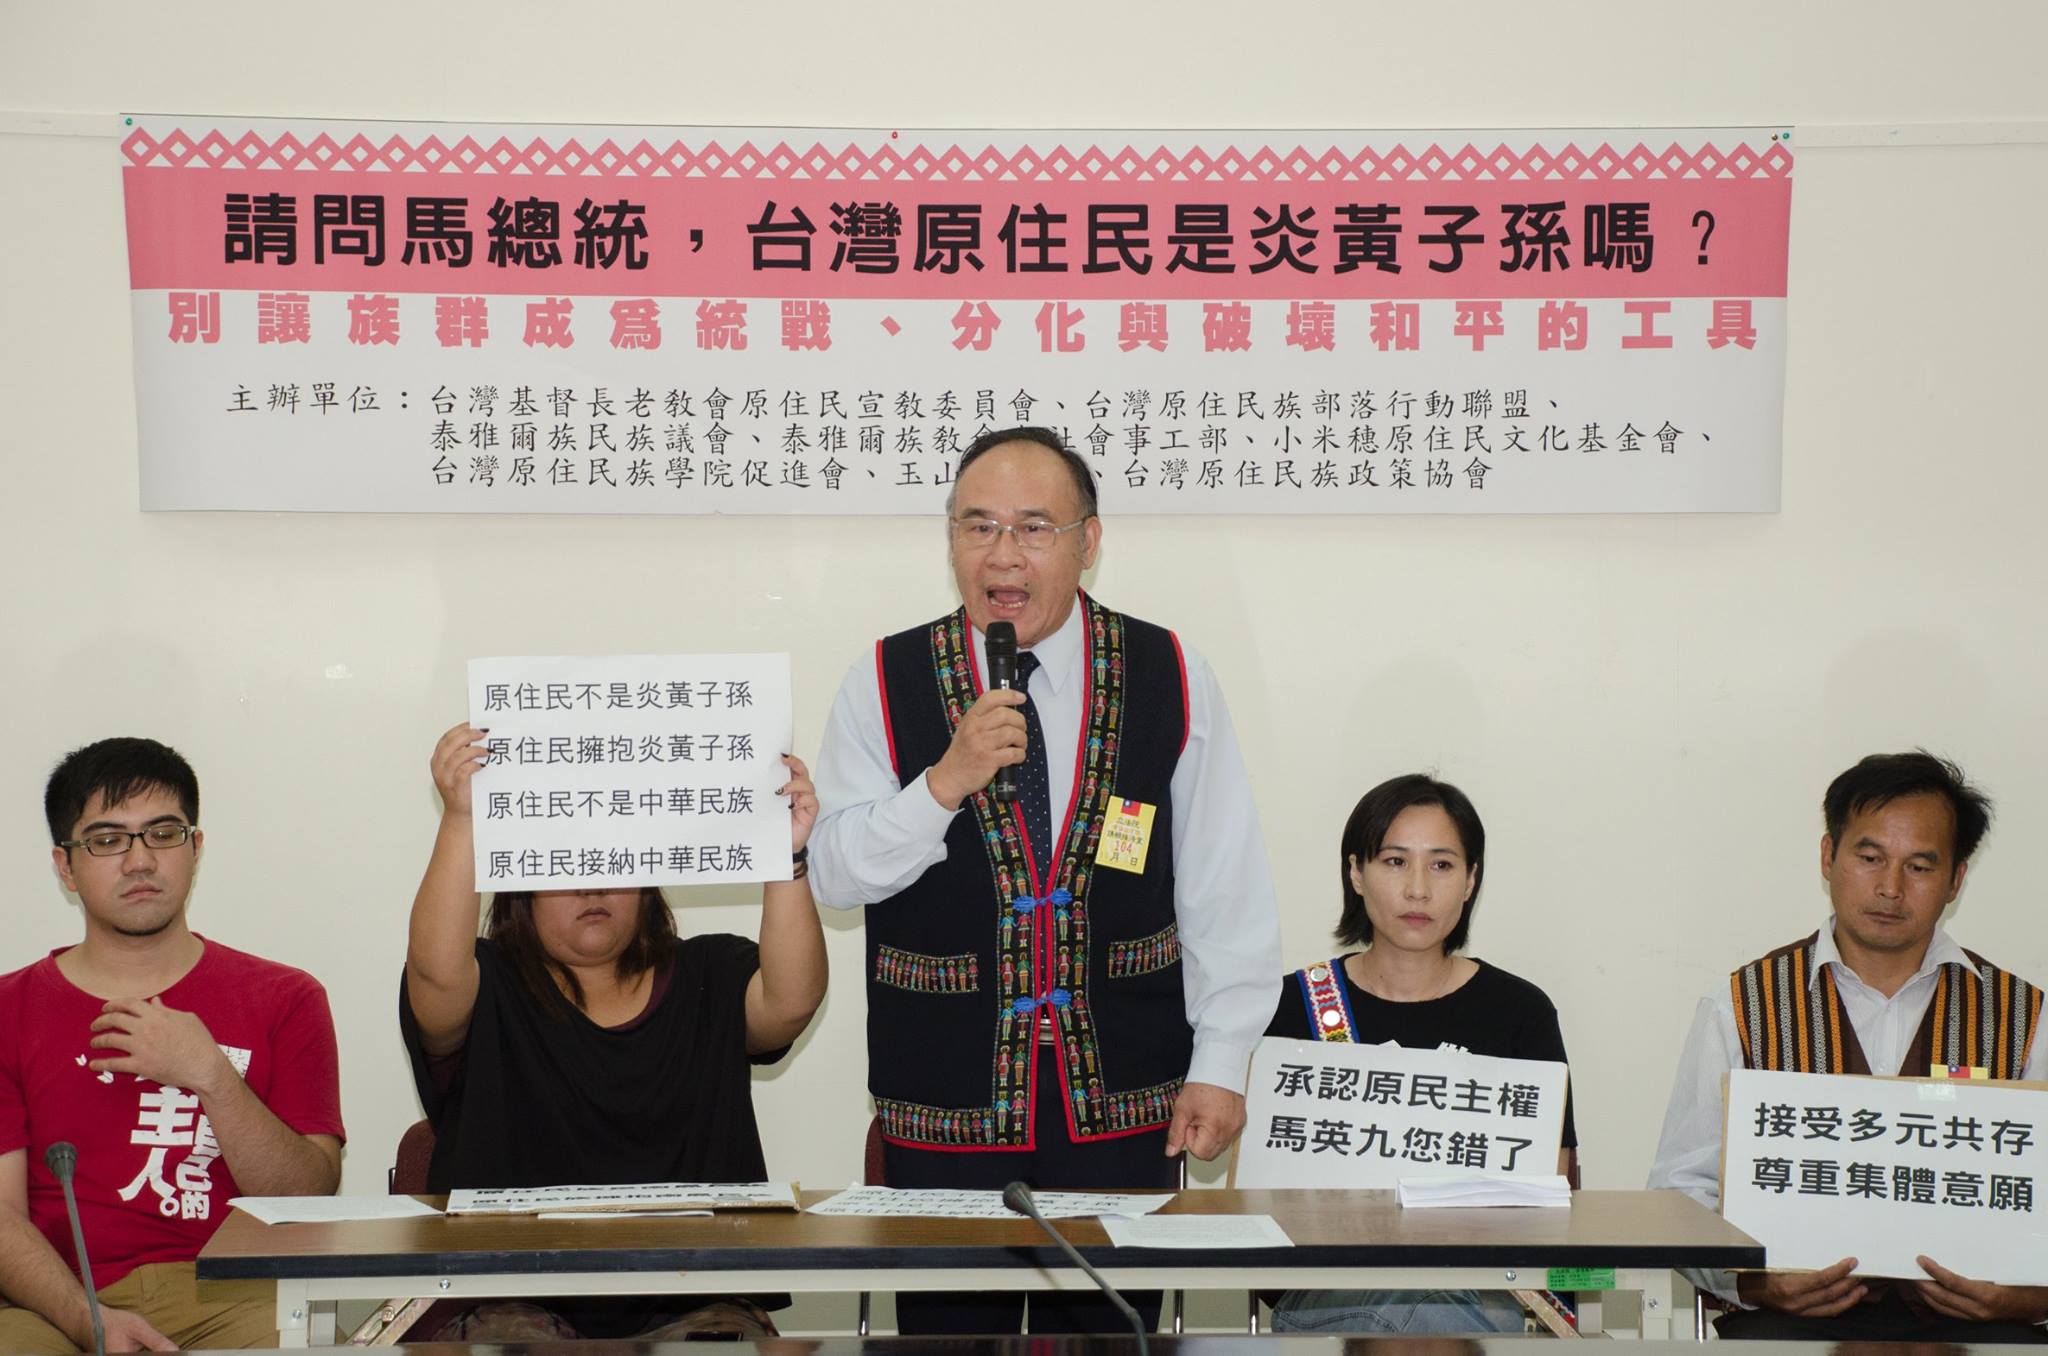 公民行动 | 台湾原住民抗议“马习会”破坏族群和谐